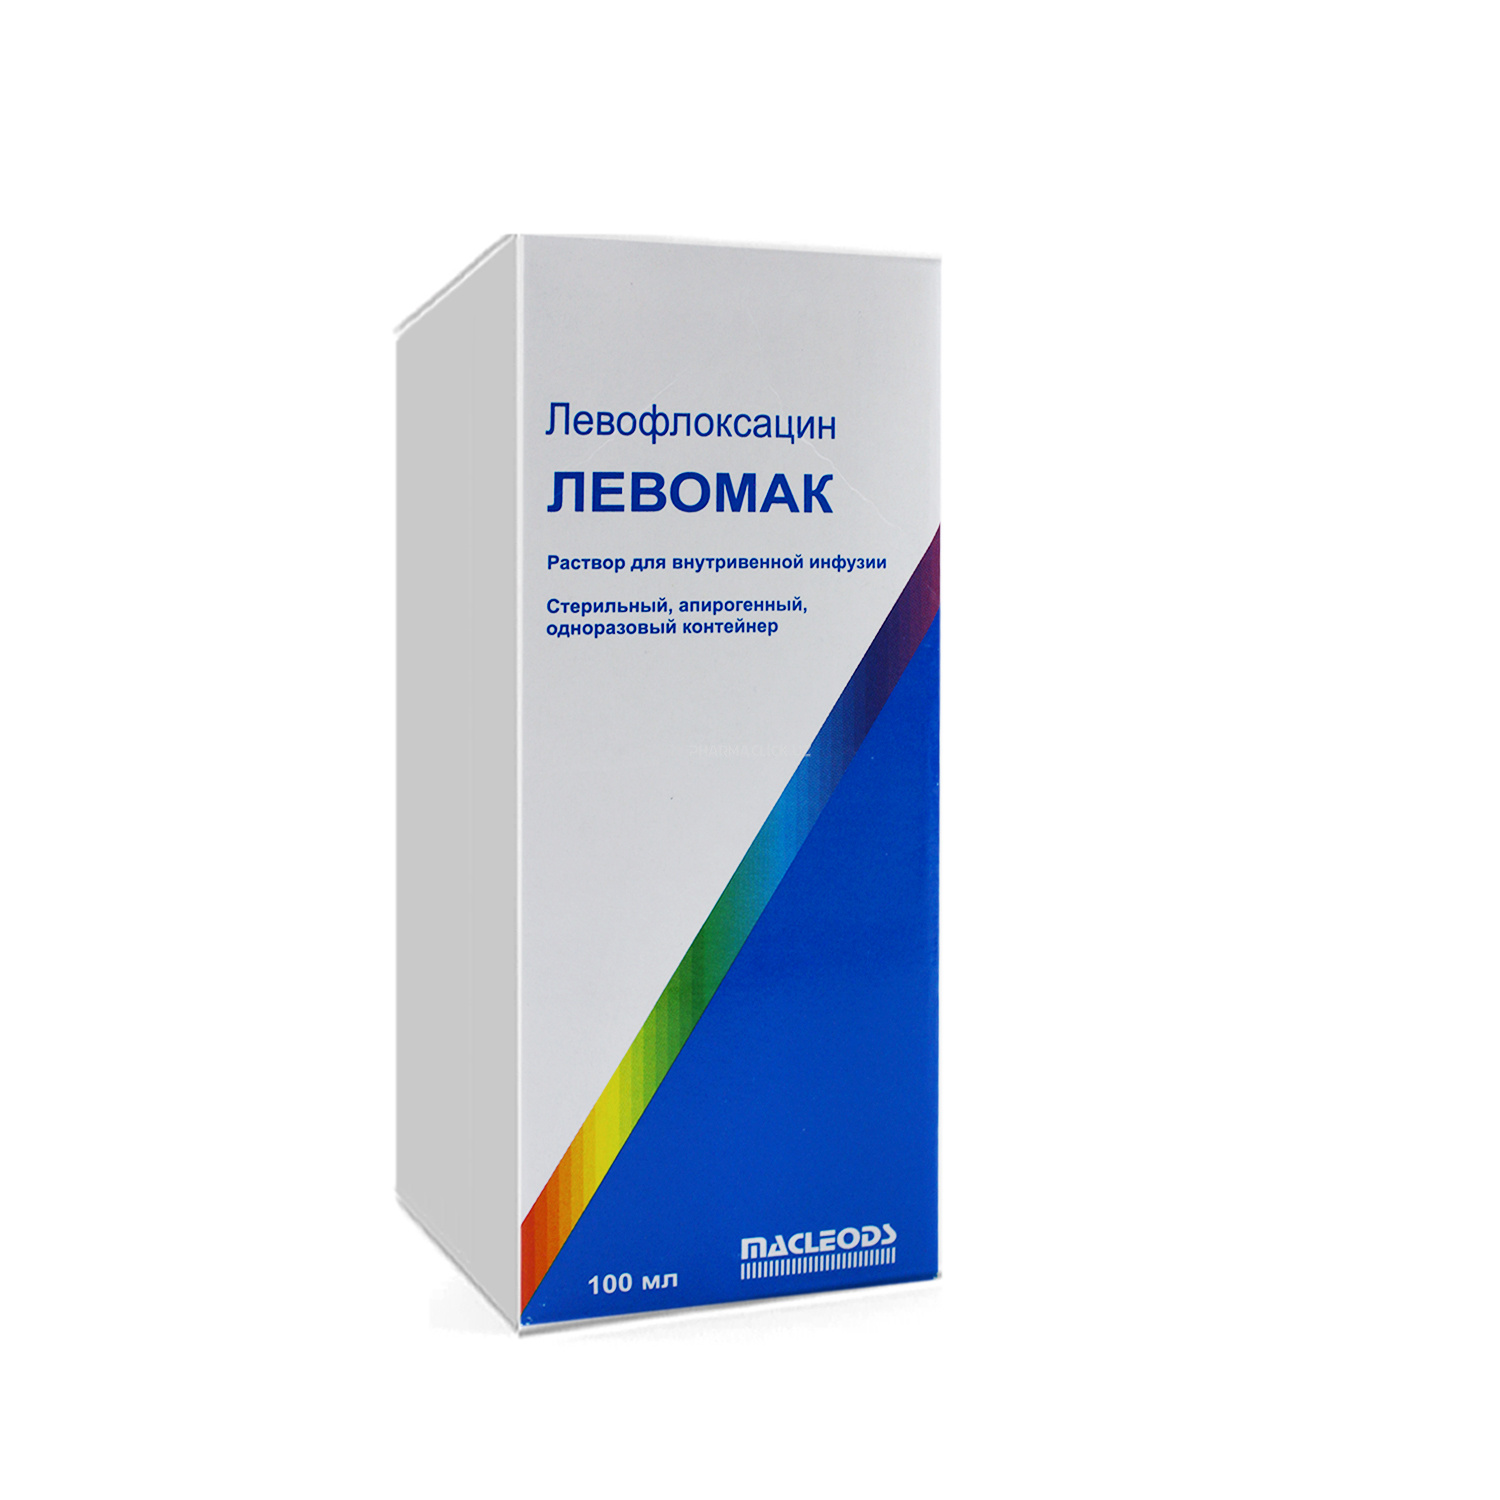 Левомак ( Левофлоксацин) р-р 500мг/100мл